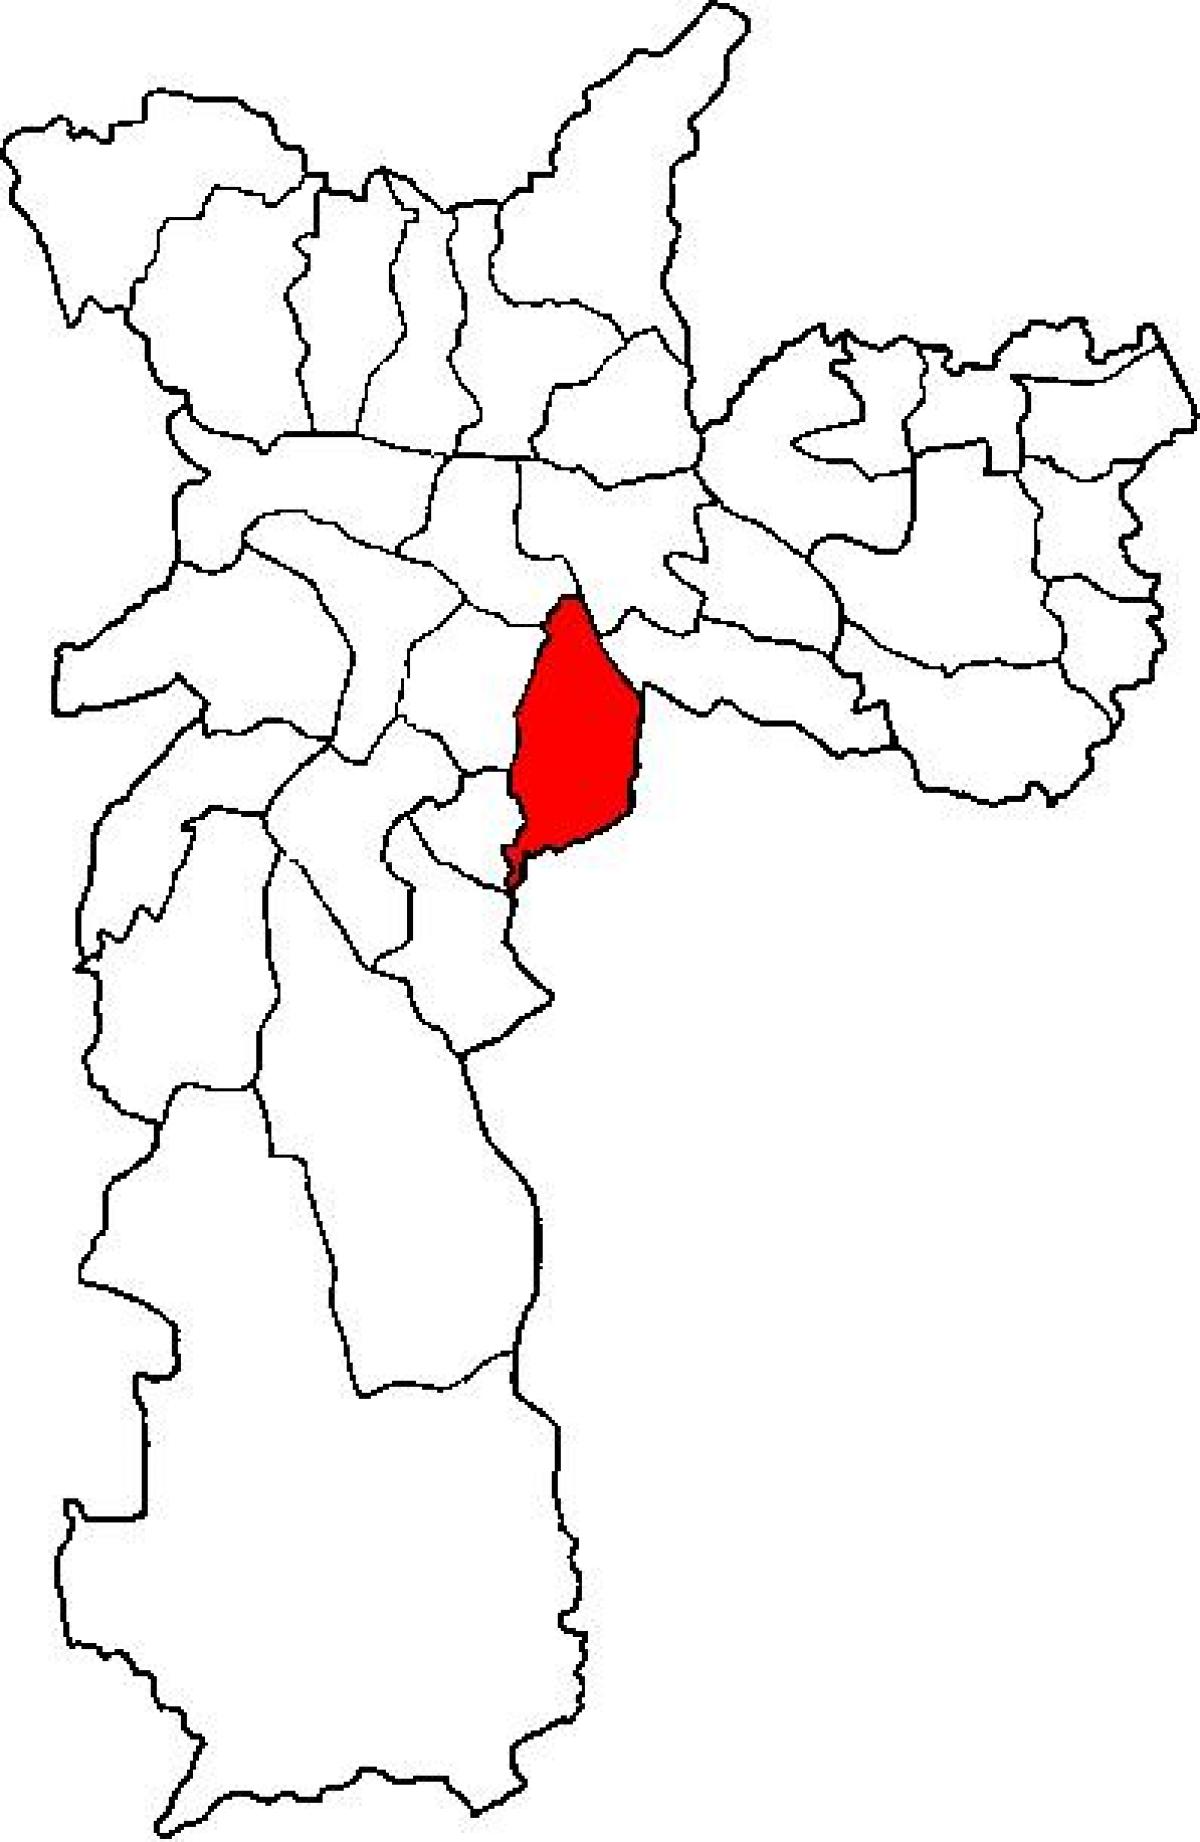 Քարտեզ супрефектур Ипиранга-Սան